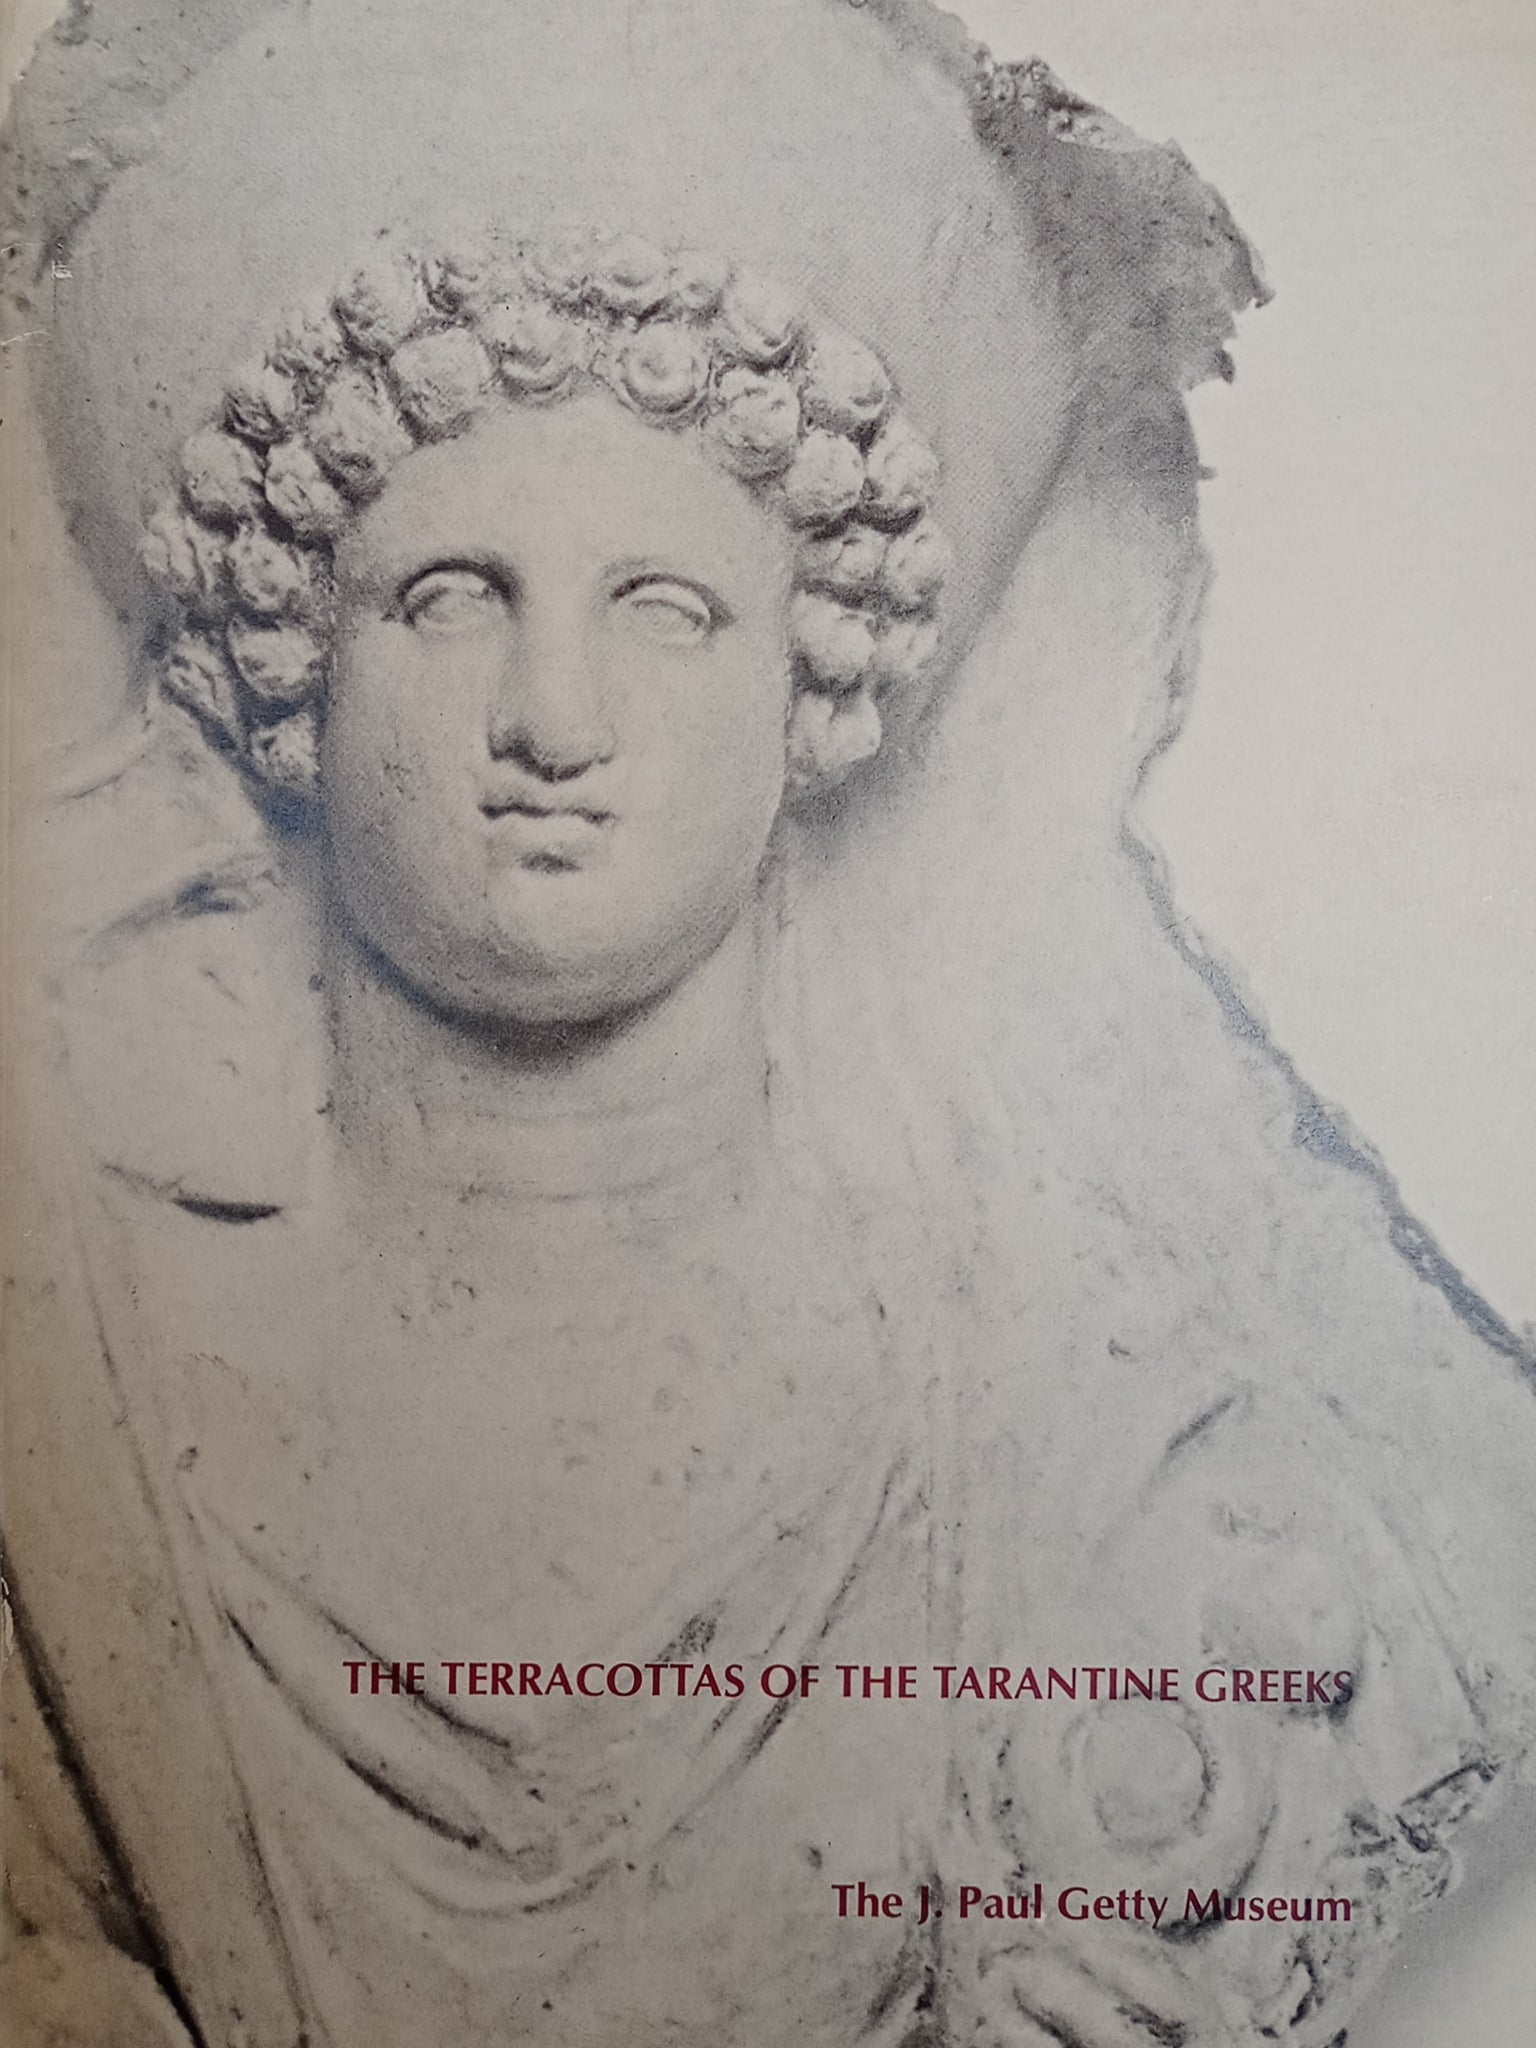 The Terracottas of the Tarantine Greeks.